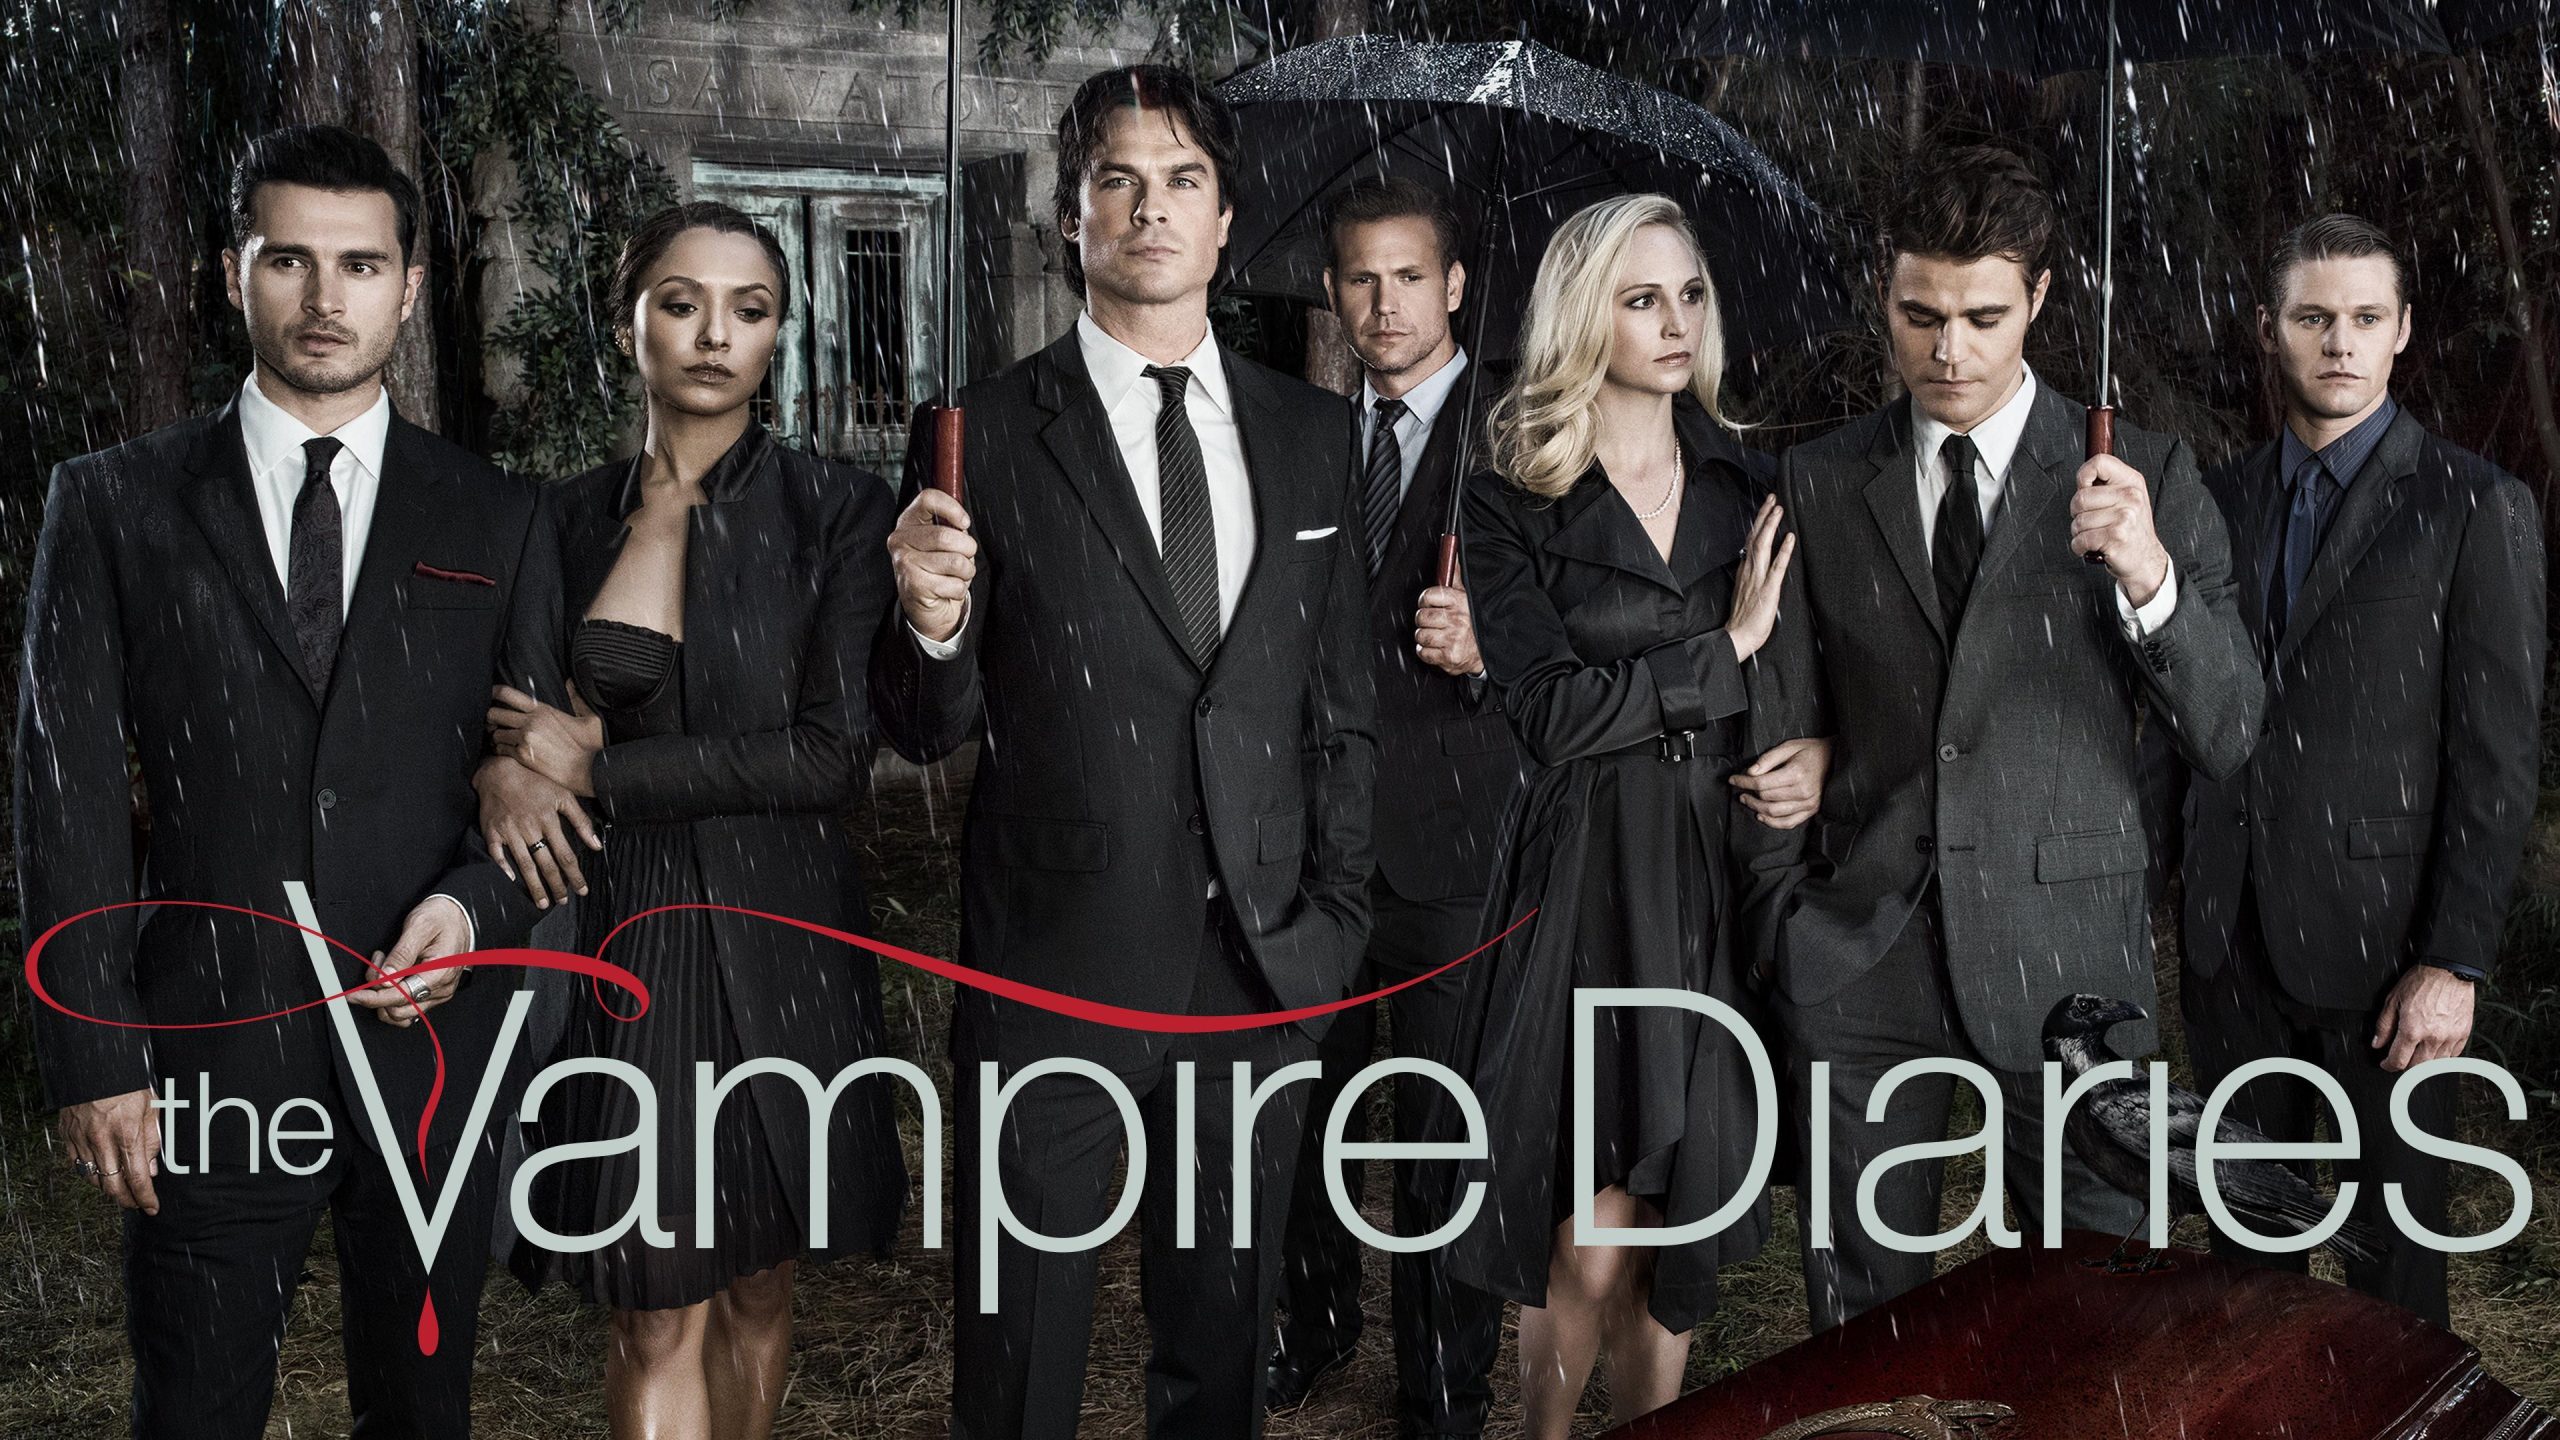 Poster de divulgação da série The Vampire Diaries com os protagonistas a frente e o título da série abaixo